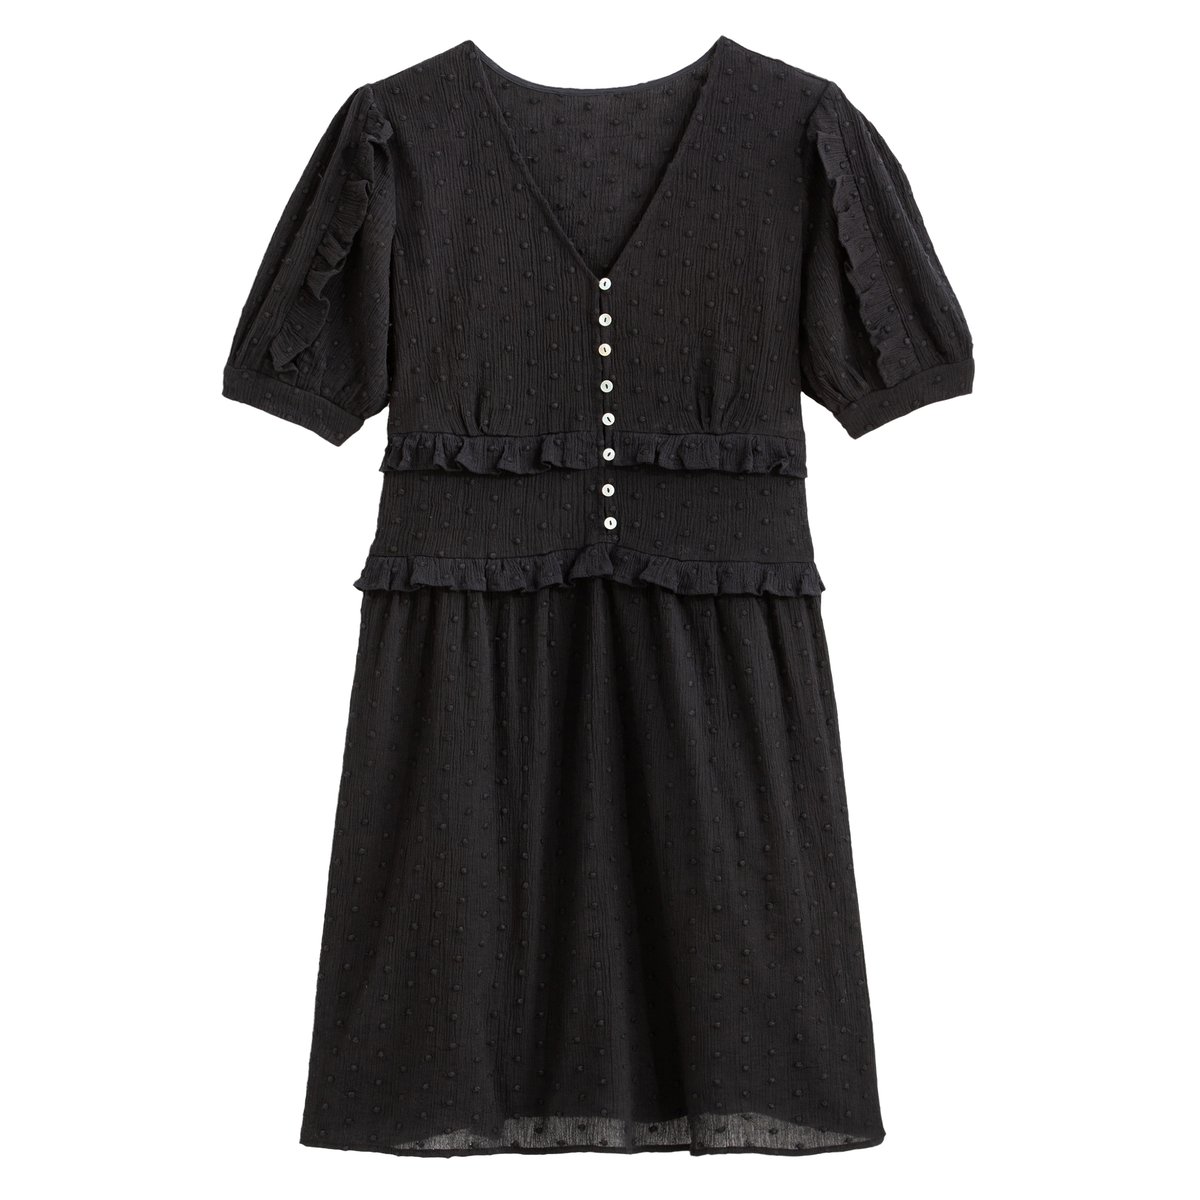 Платье La Redoute Короткое с короткими рукавами 40 (FR) - 46 (RUS) черный, размер 40 (FR) - 46 (RUS) Короткое с короткими рукавами 40 (FR) - 46 (RUS) черный - фото 5